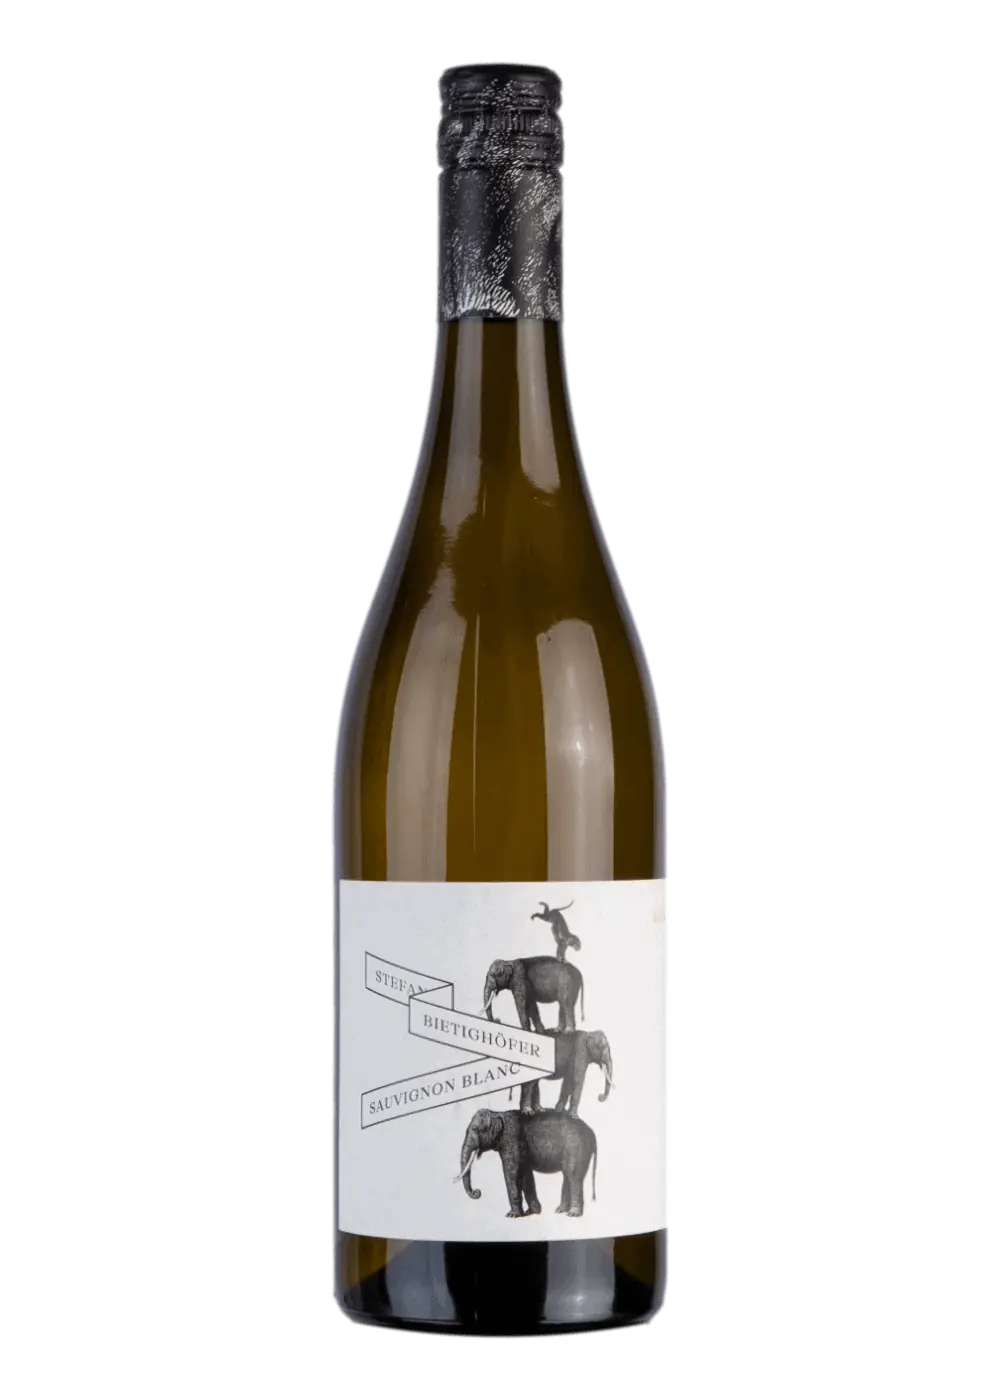 Weinflasche Sauvignon Blanc Réserve von Stefan Bietighöfer